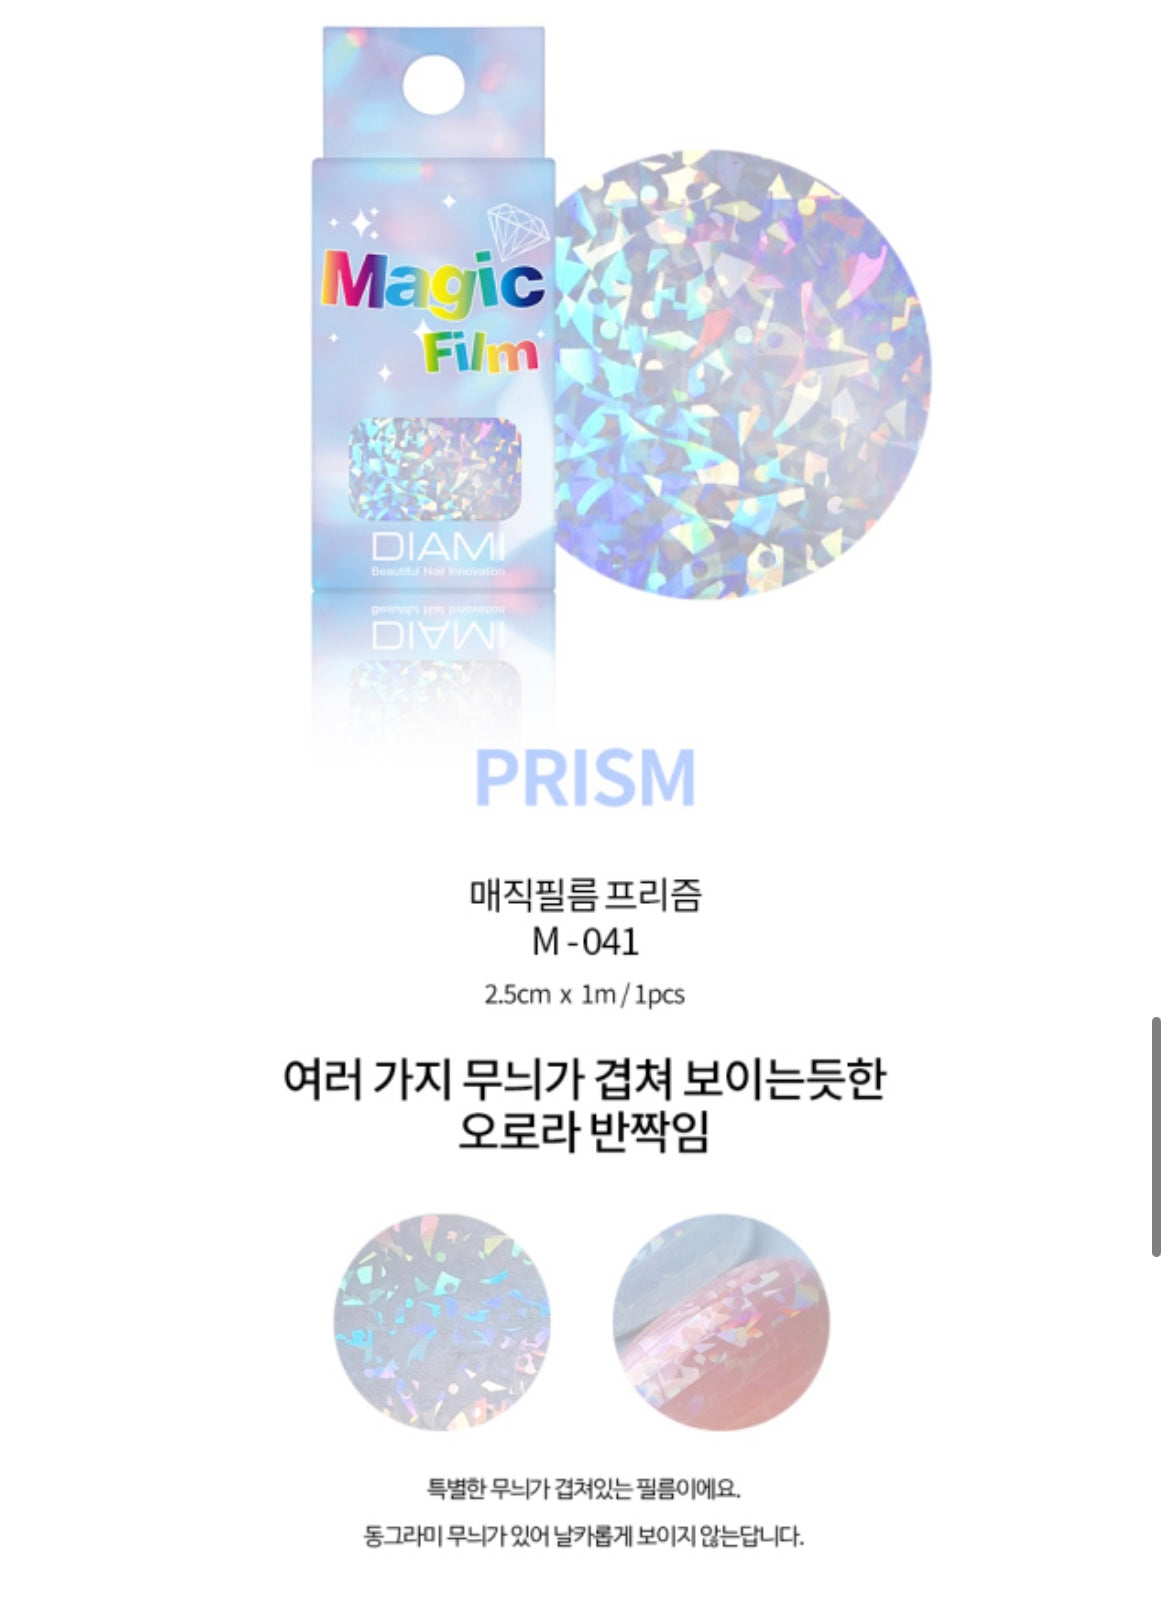 DIAMI Magic film - Glow beam/prism